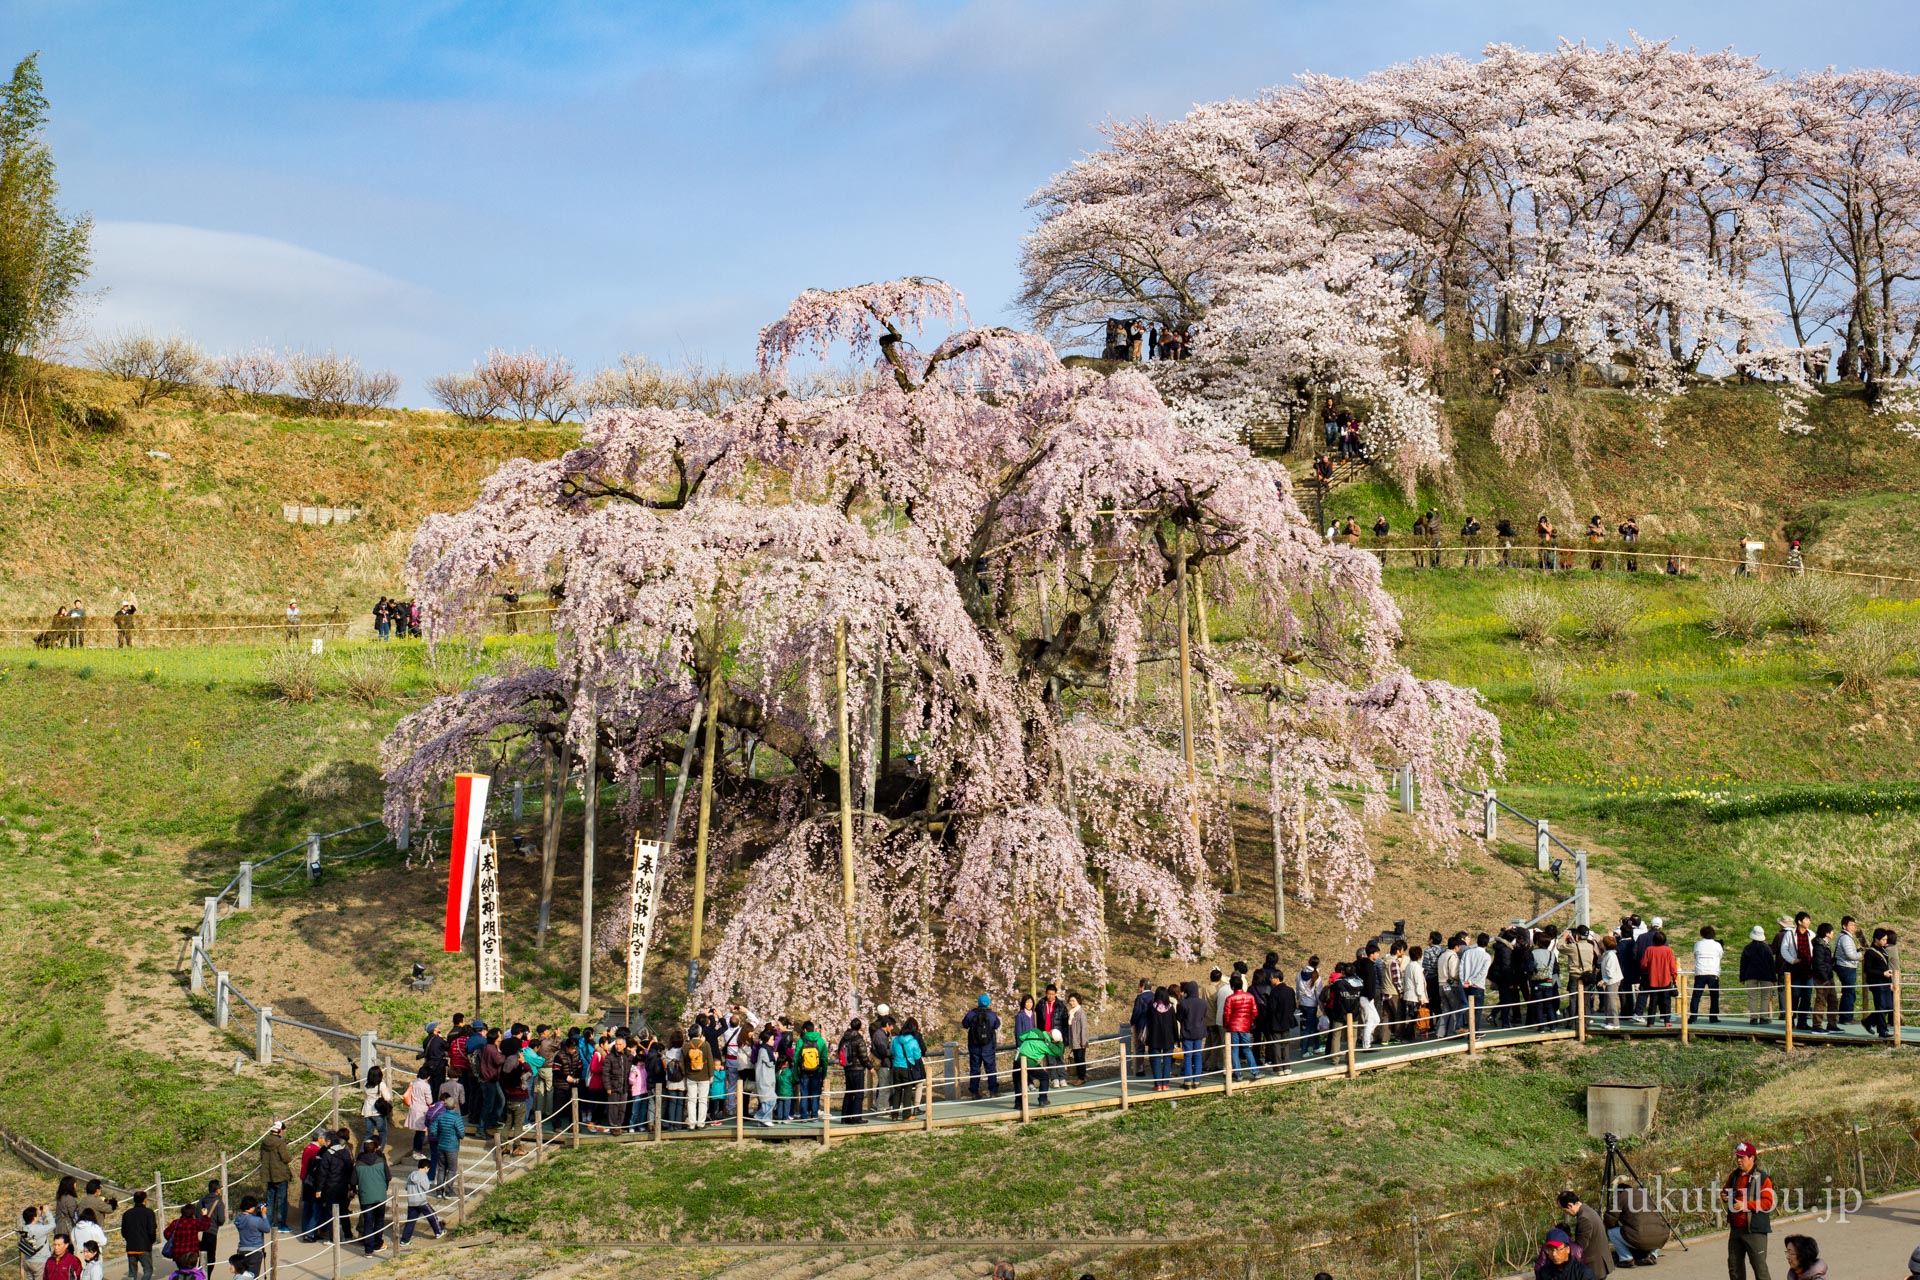 福島県を代表する桜の名所が粒揃い あぶくま高地 国道349号線で行く桜めぐり | 福島県を楽しむ観光情報サイト ふくつぶ